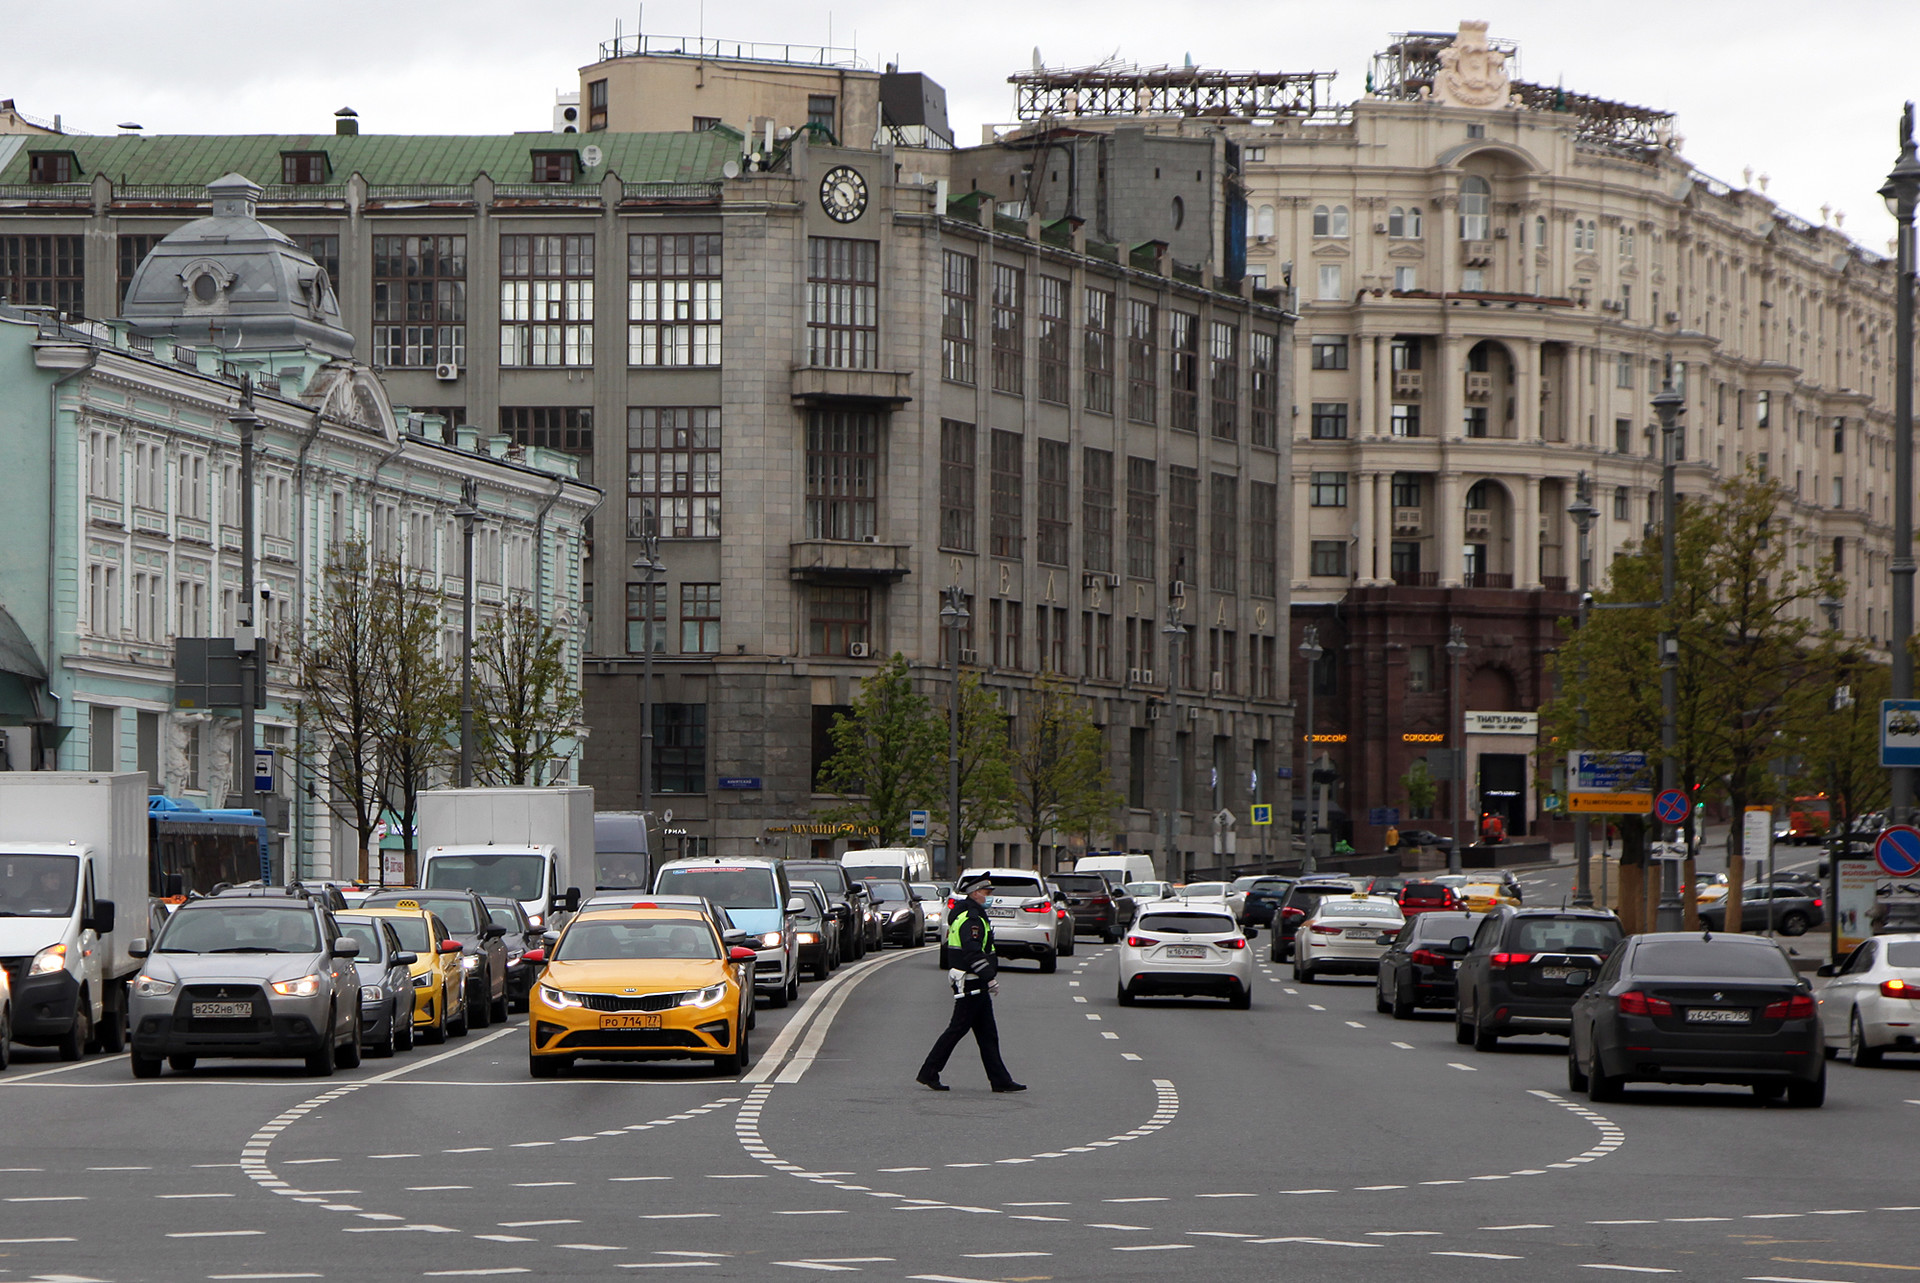 Suasana lalu lintas di Tverskaya Ulitsa cukup ramai dengan kendaraan.